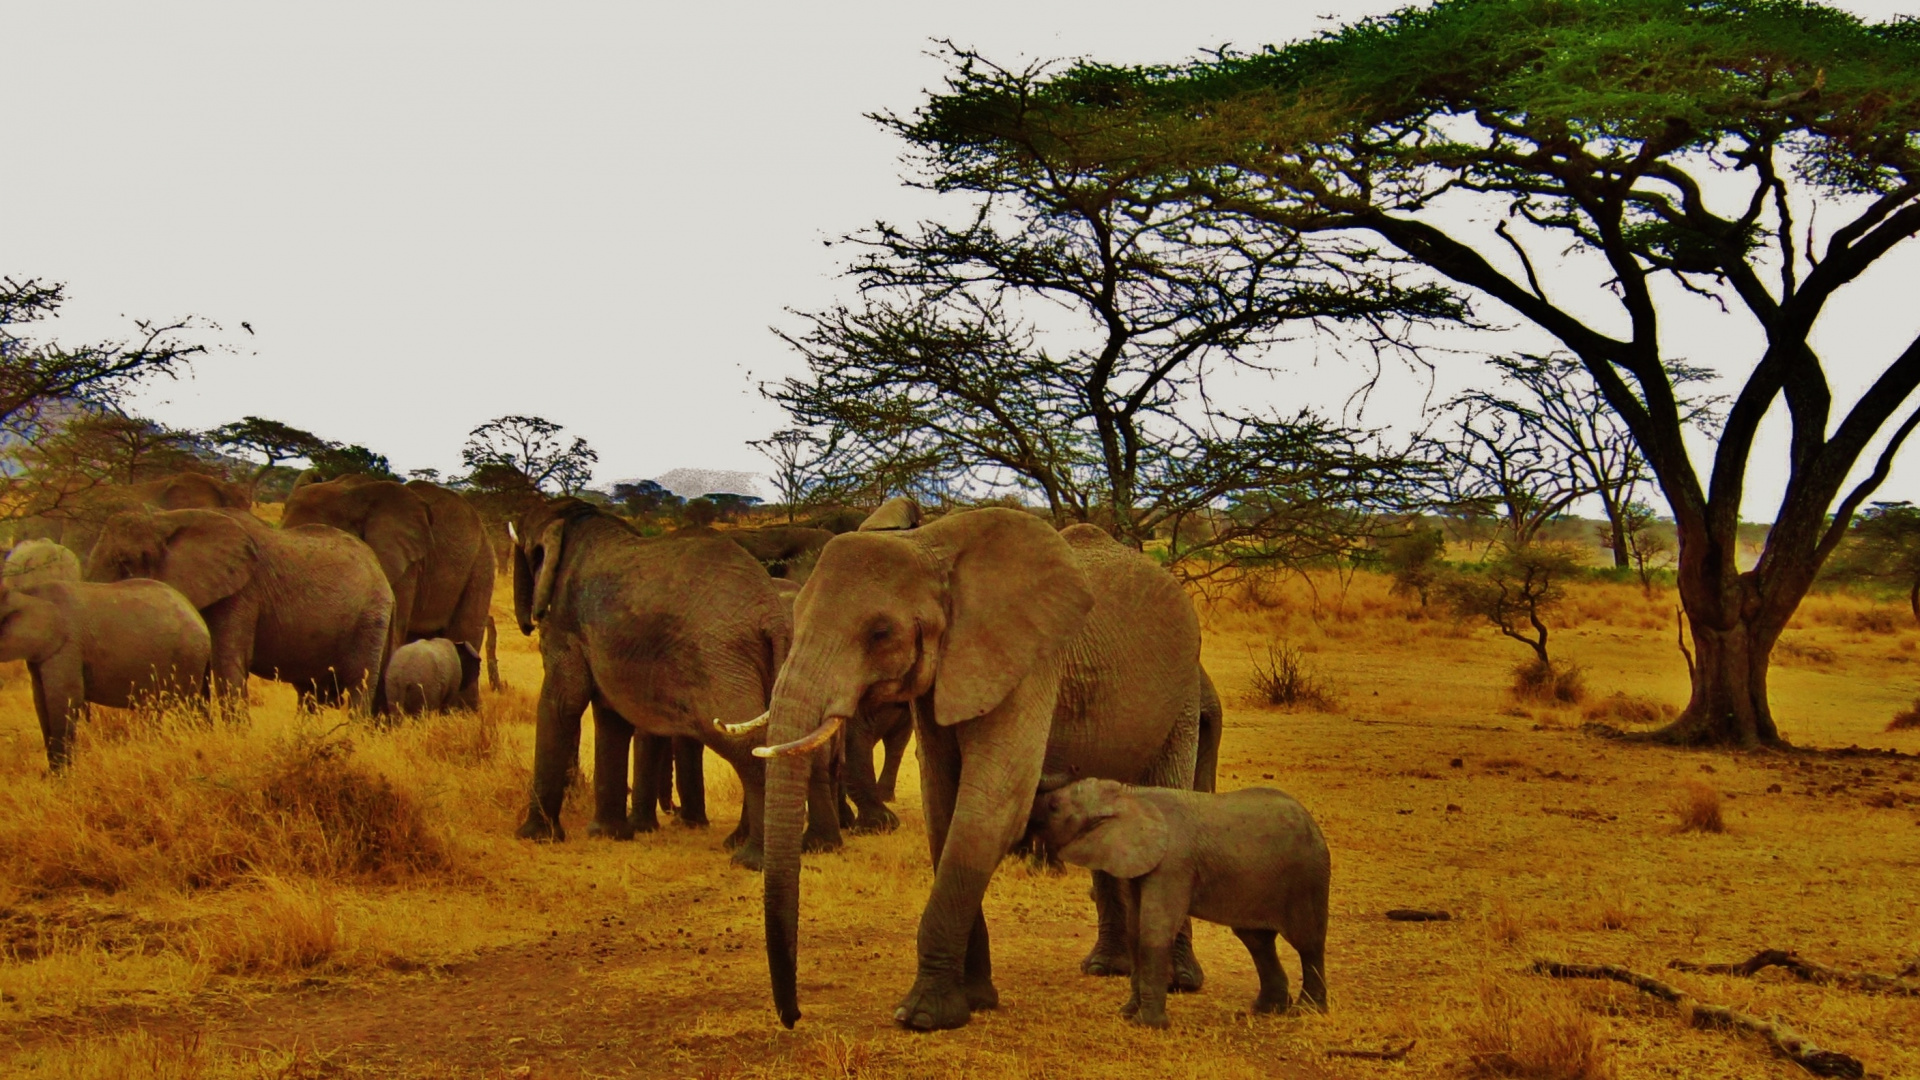 Safari, 野生动物, 陆地动物, 大象和猛犸象, 印度大象 壁纸 1920x1080 允许